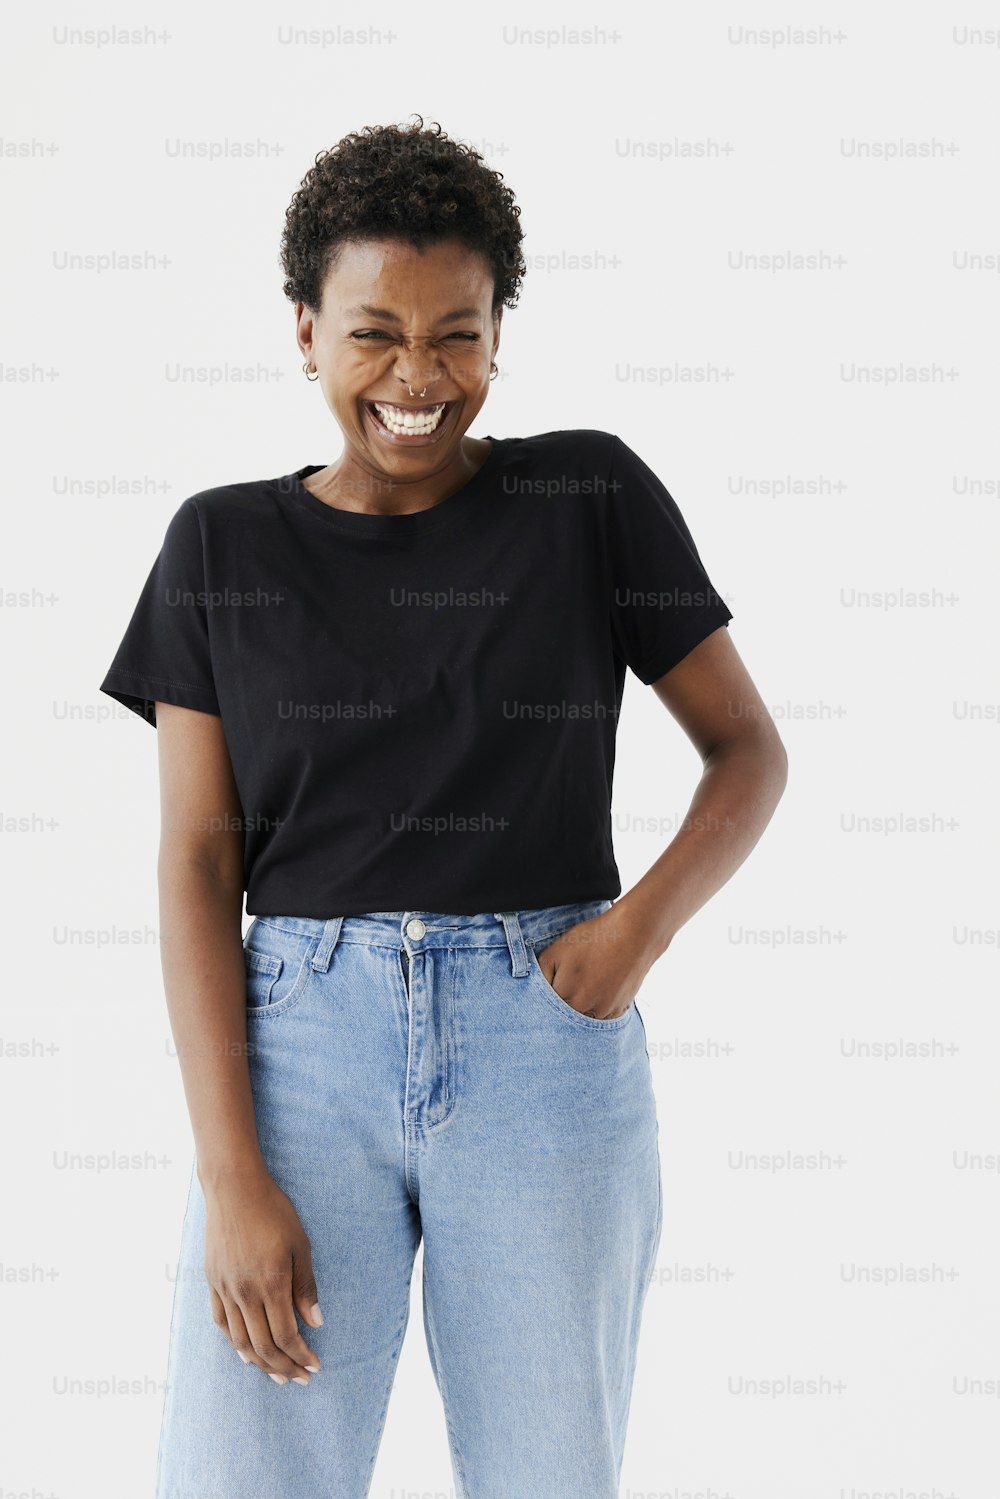 Una mujer sonriente con camisa negra y jeans